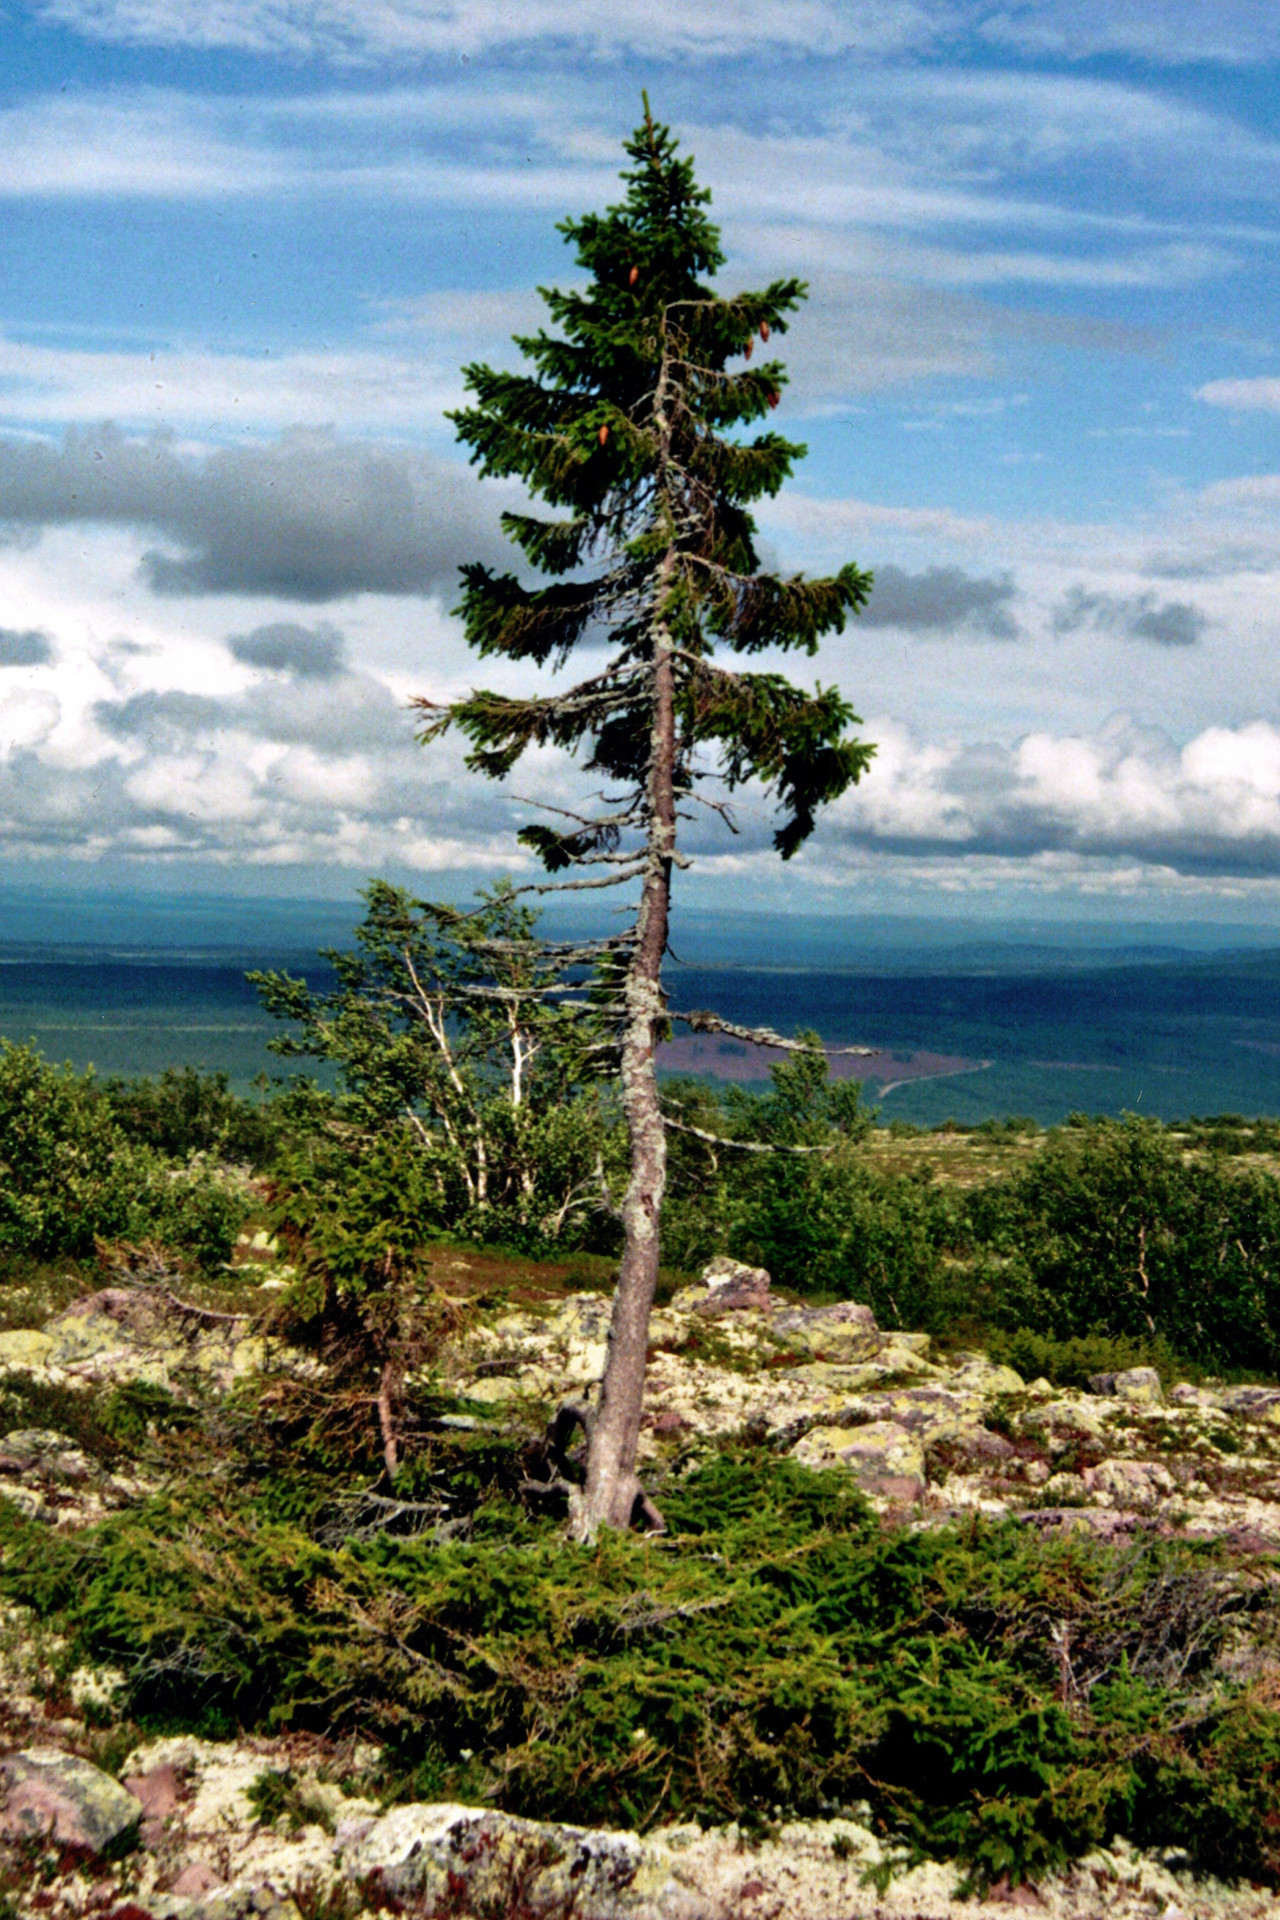 najstarsze drzewo świata, świerk mający ok. 9550 lat szwecja